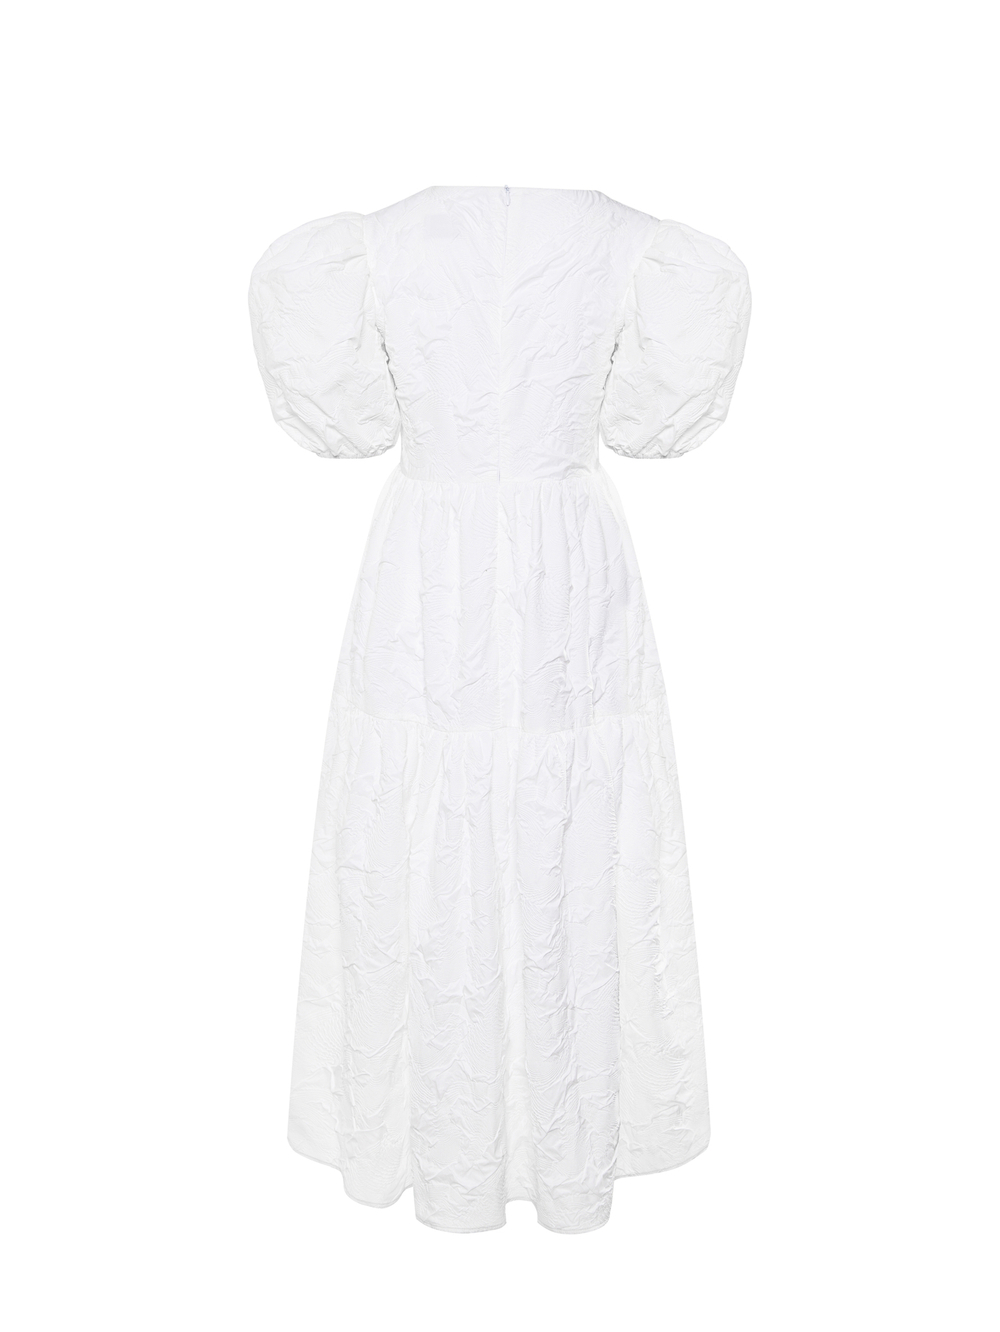 Coco white dress